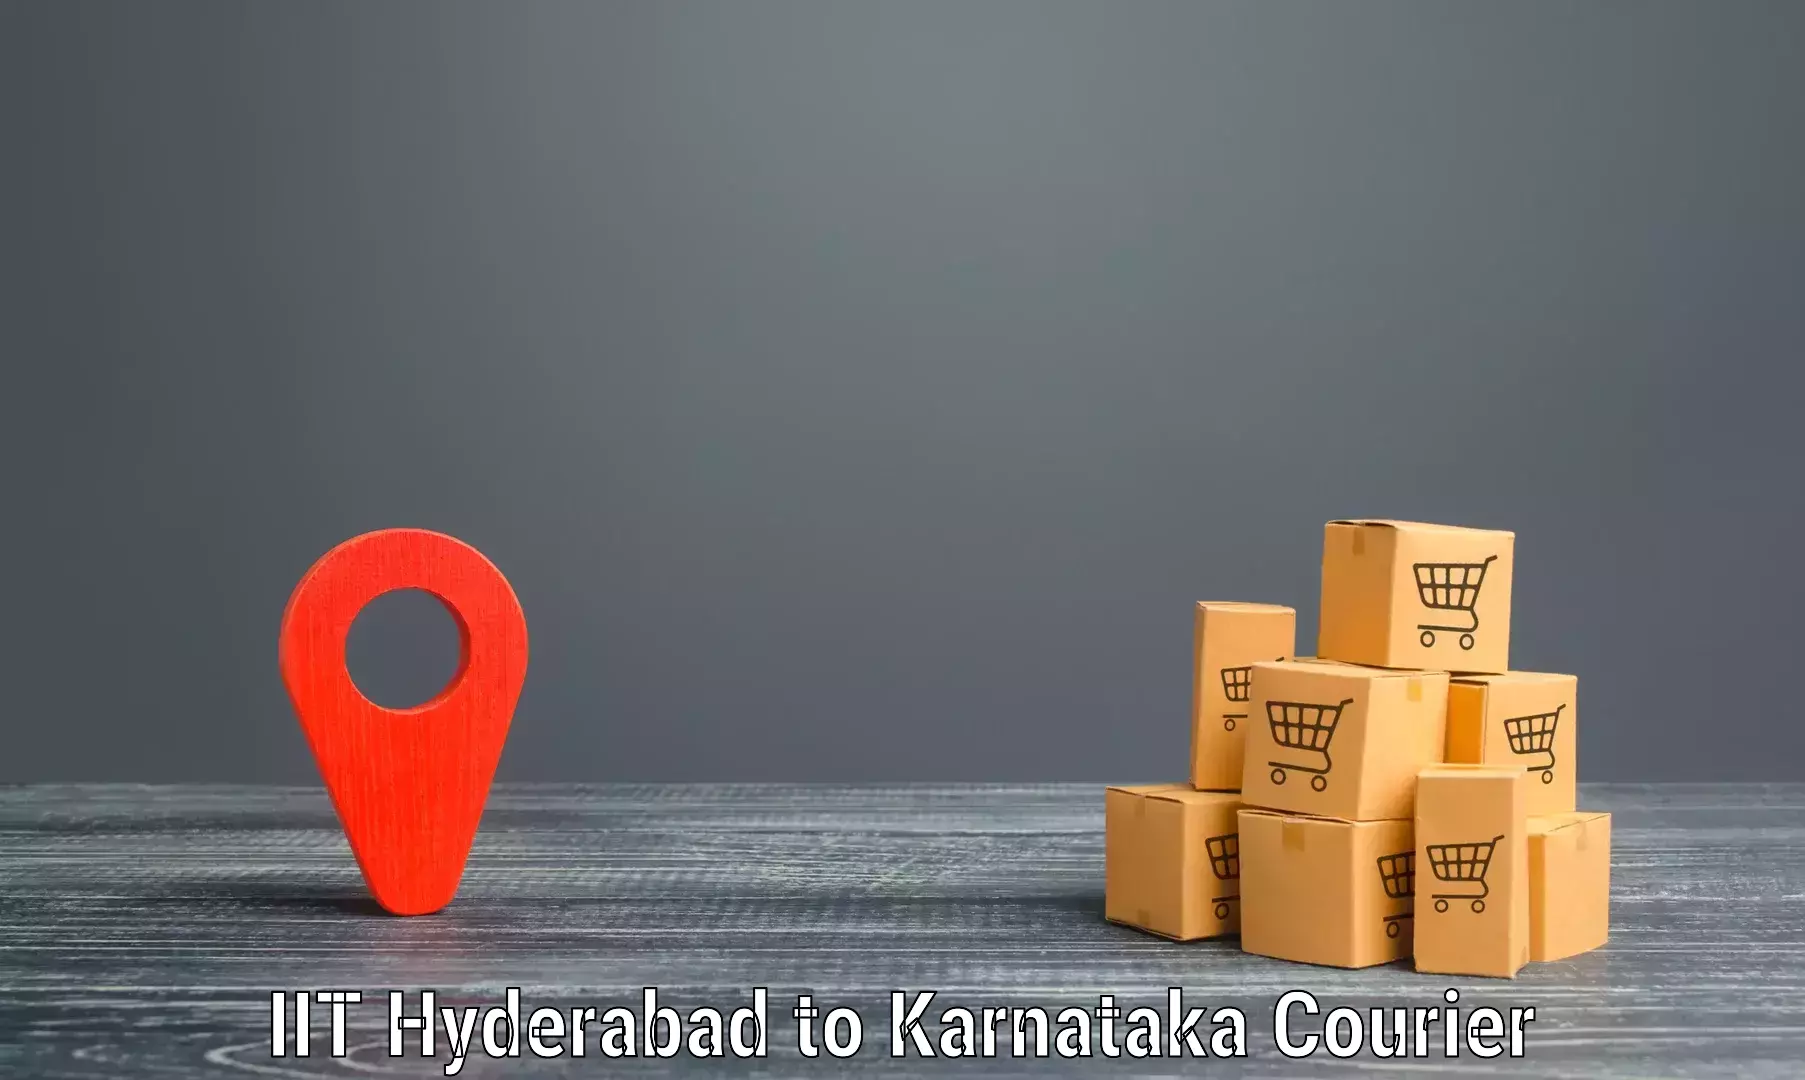 Customer-focused courier in IIT Hyderabad to Kotturu